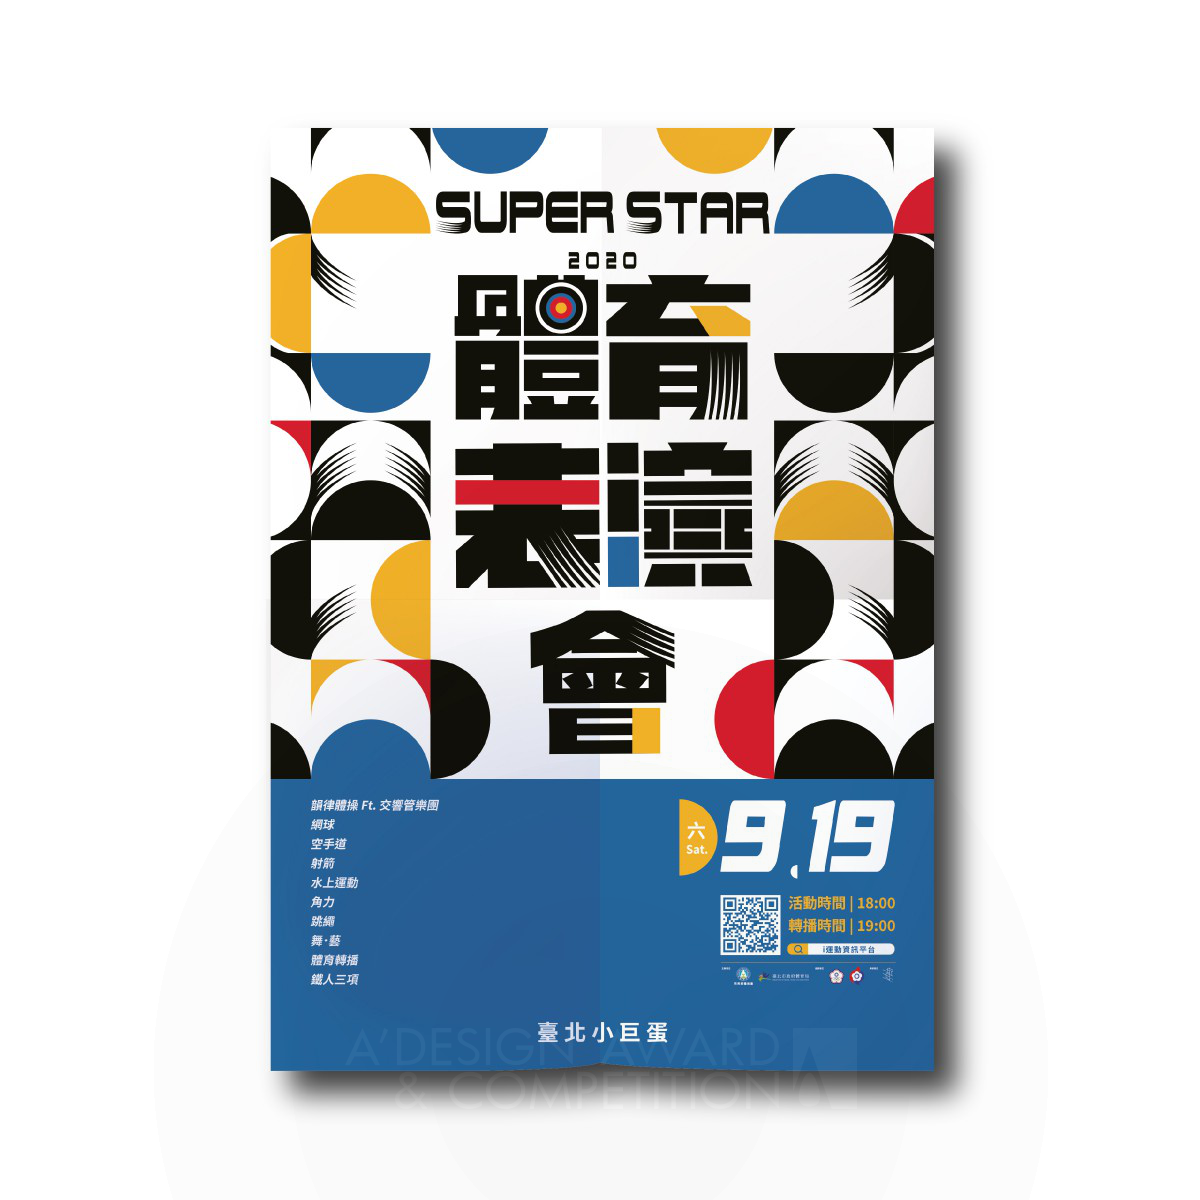 2020 Super Star: Evento de Desempenho Esportivo